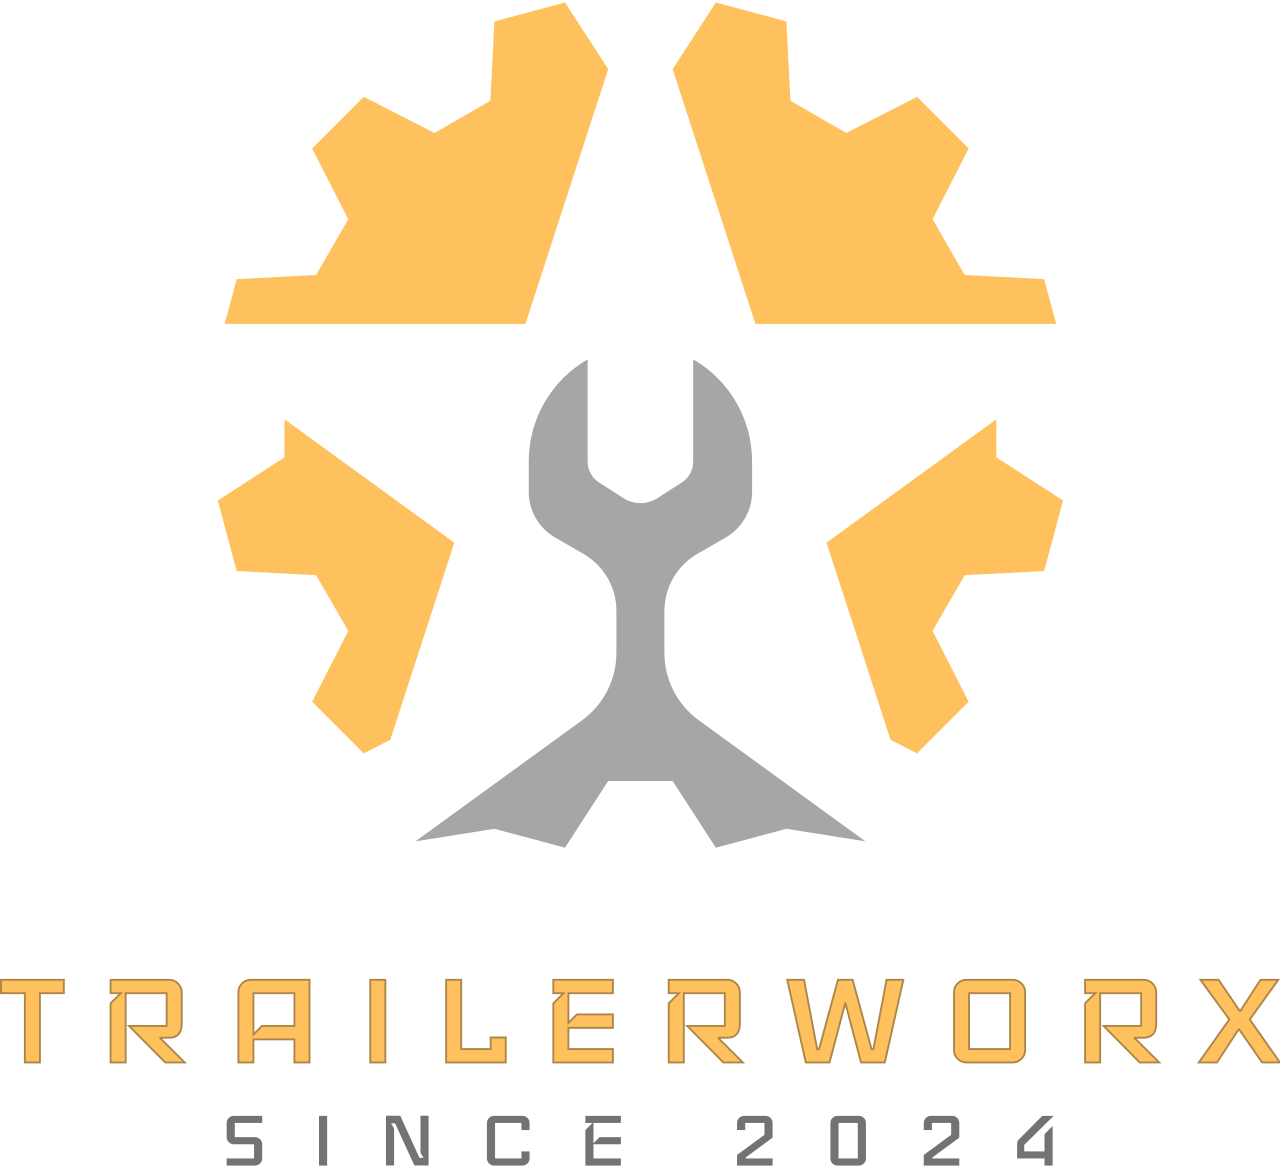 Trailerworx's logo